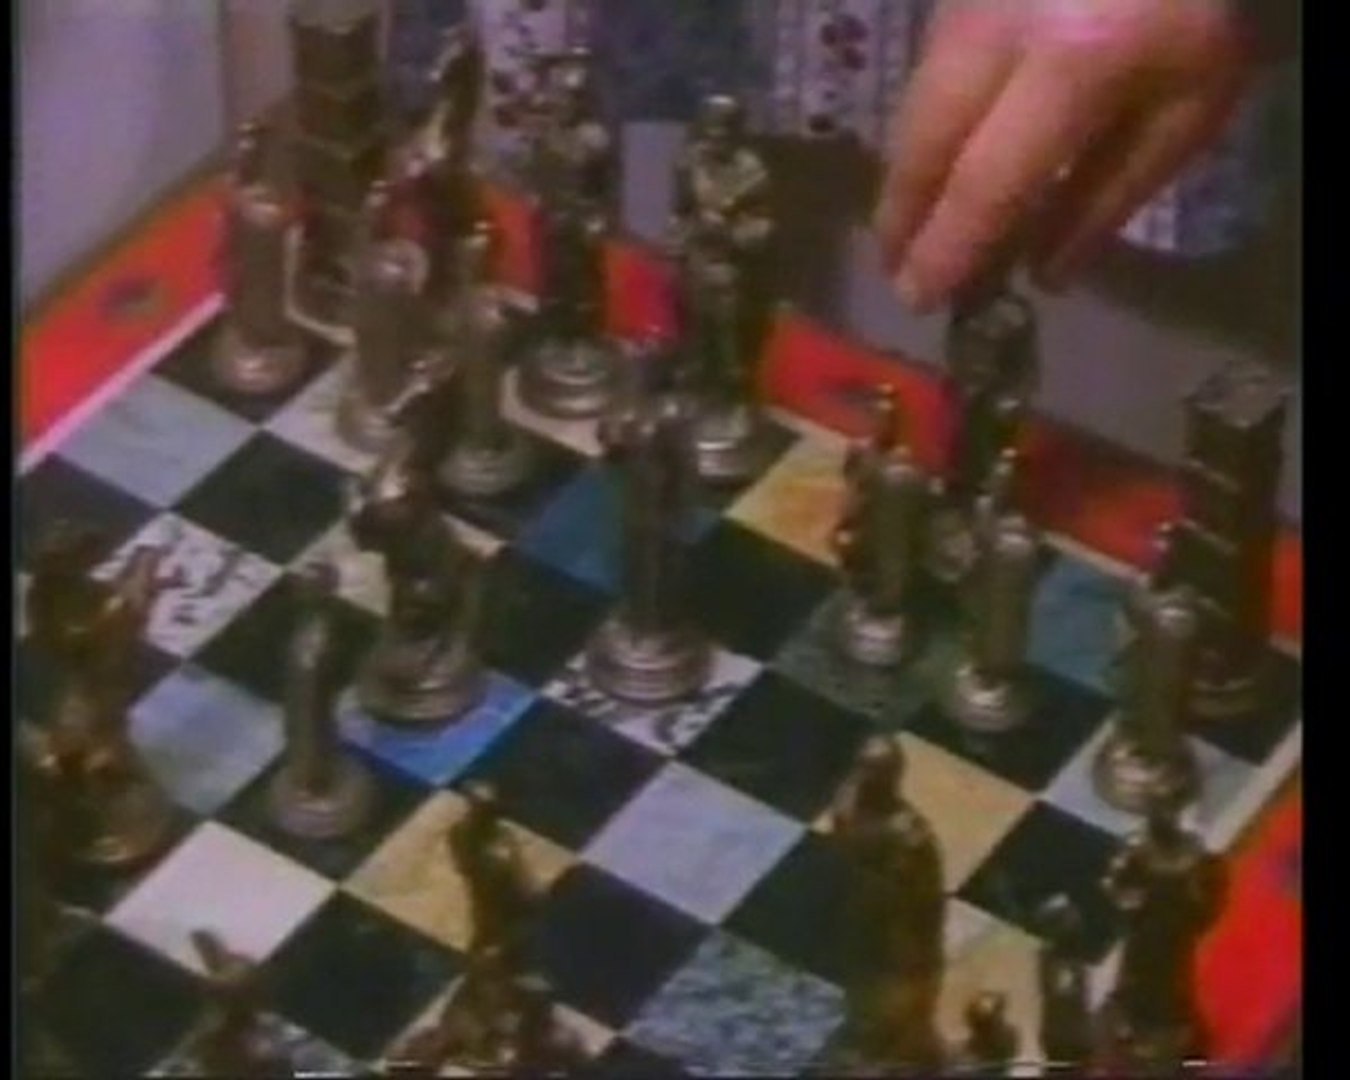 Marsh Lord Class_Warlock 32 Vs Chess Rush Game - video Dailymotion